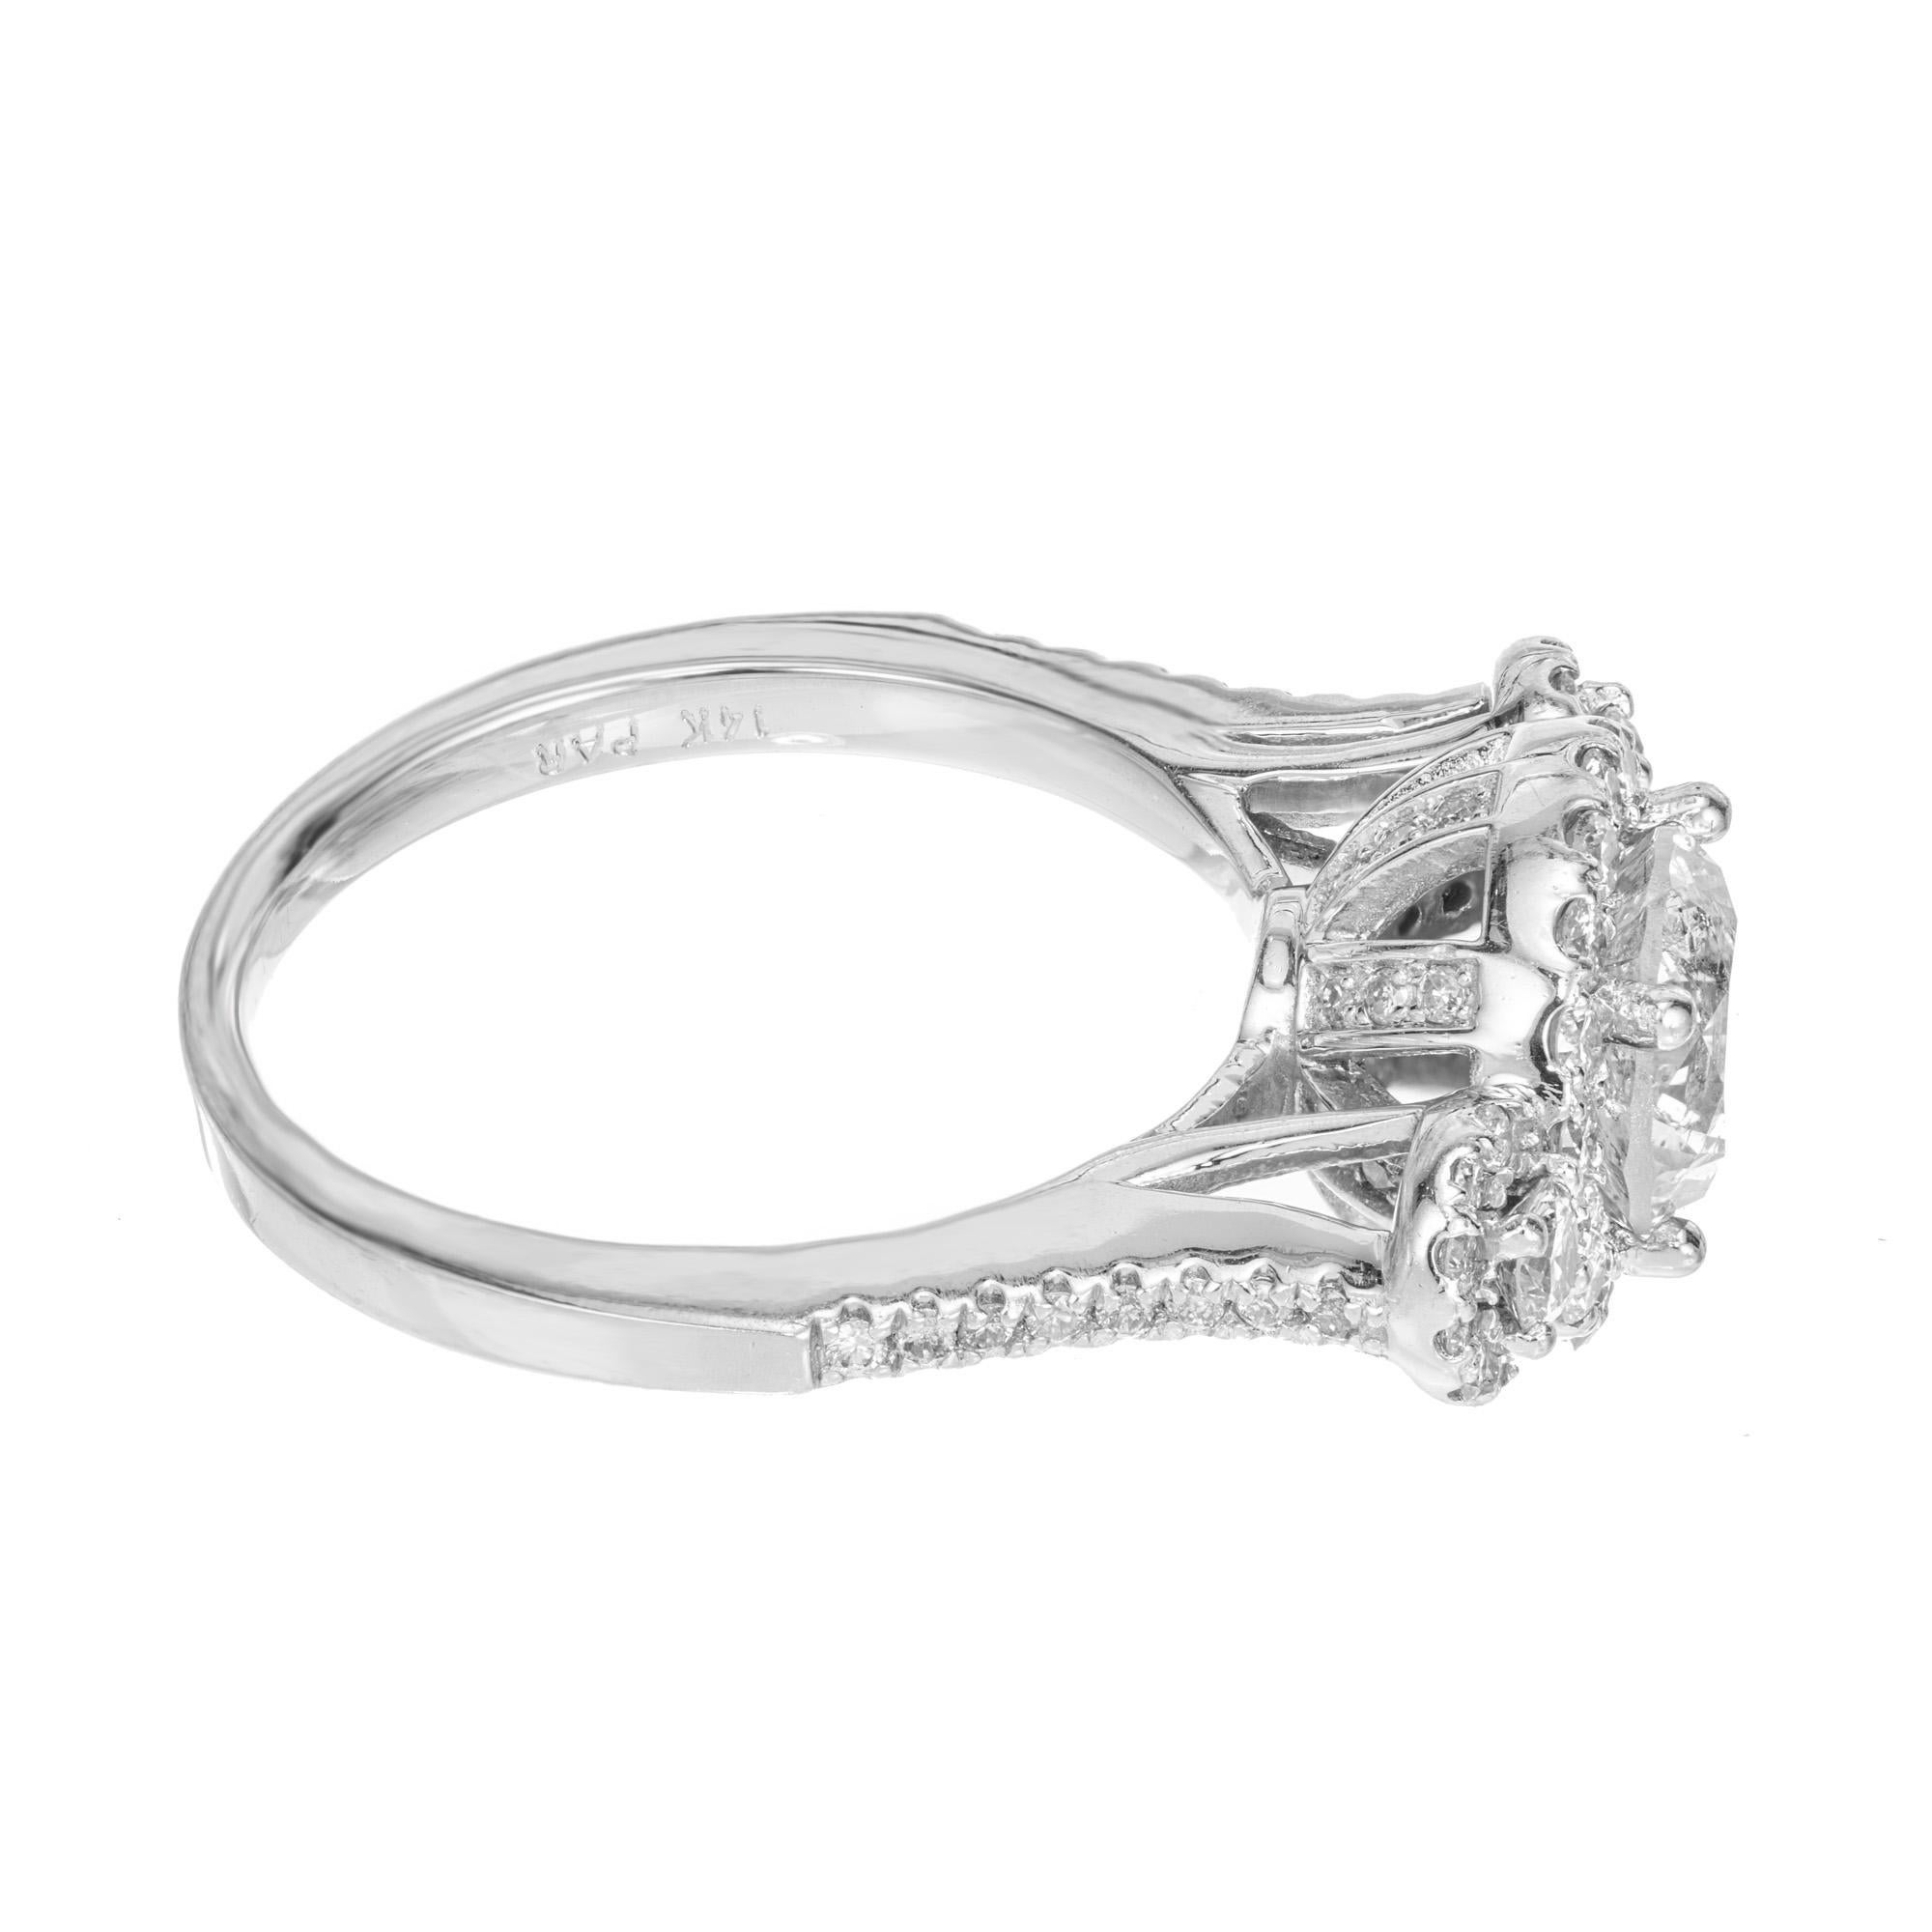 3 stone halo diamond engagement ring